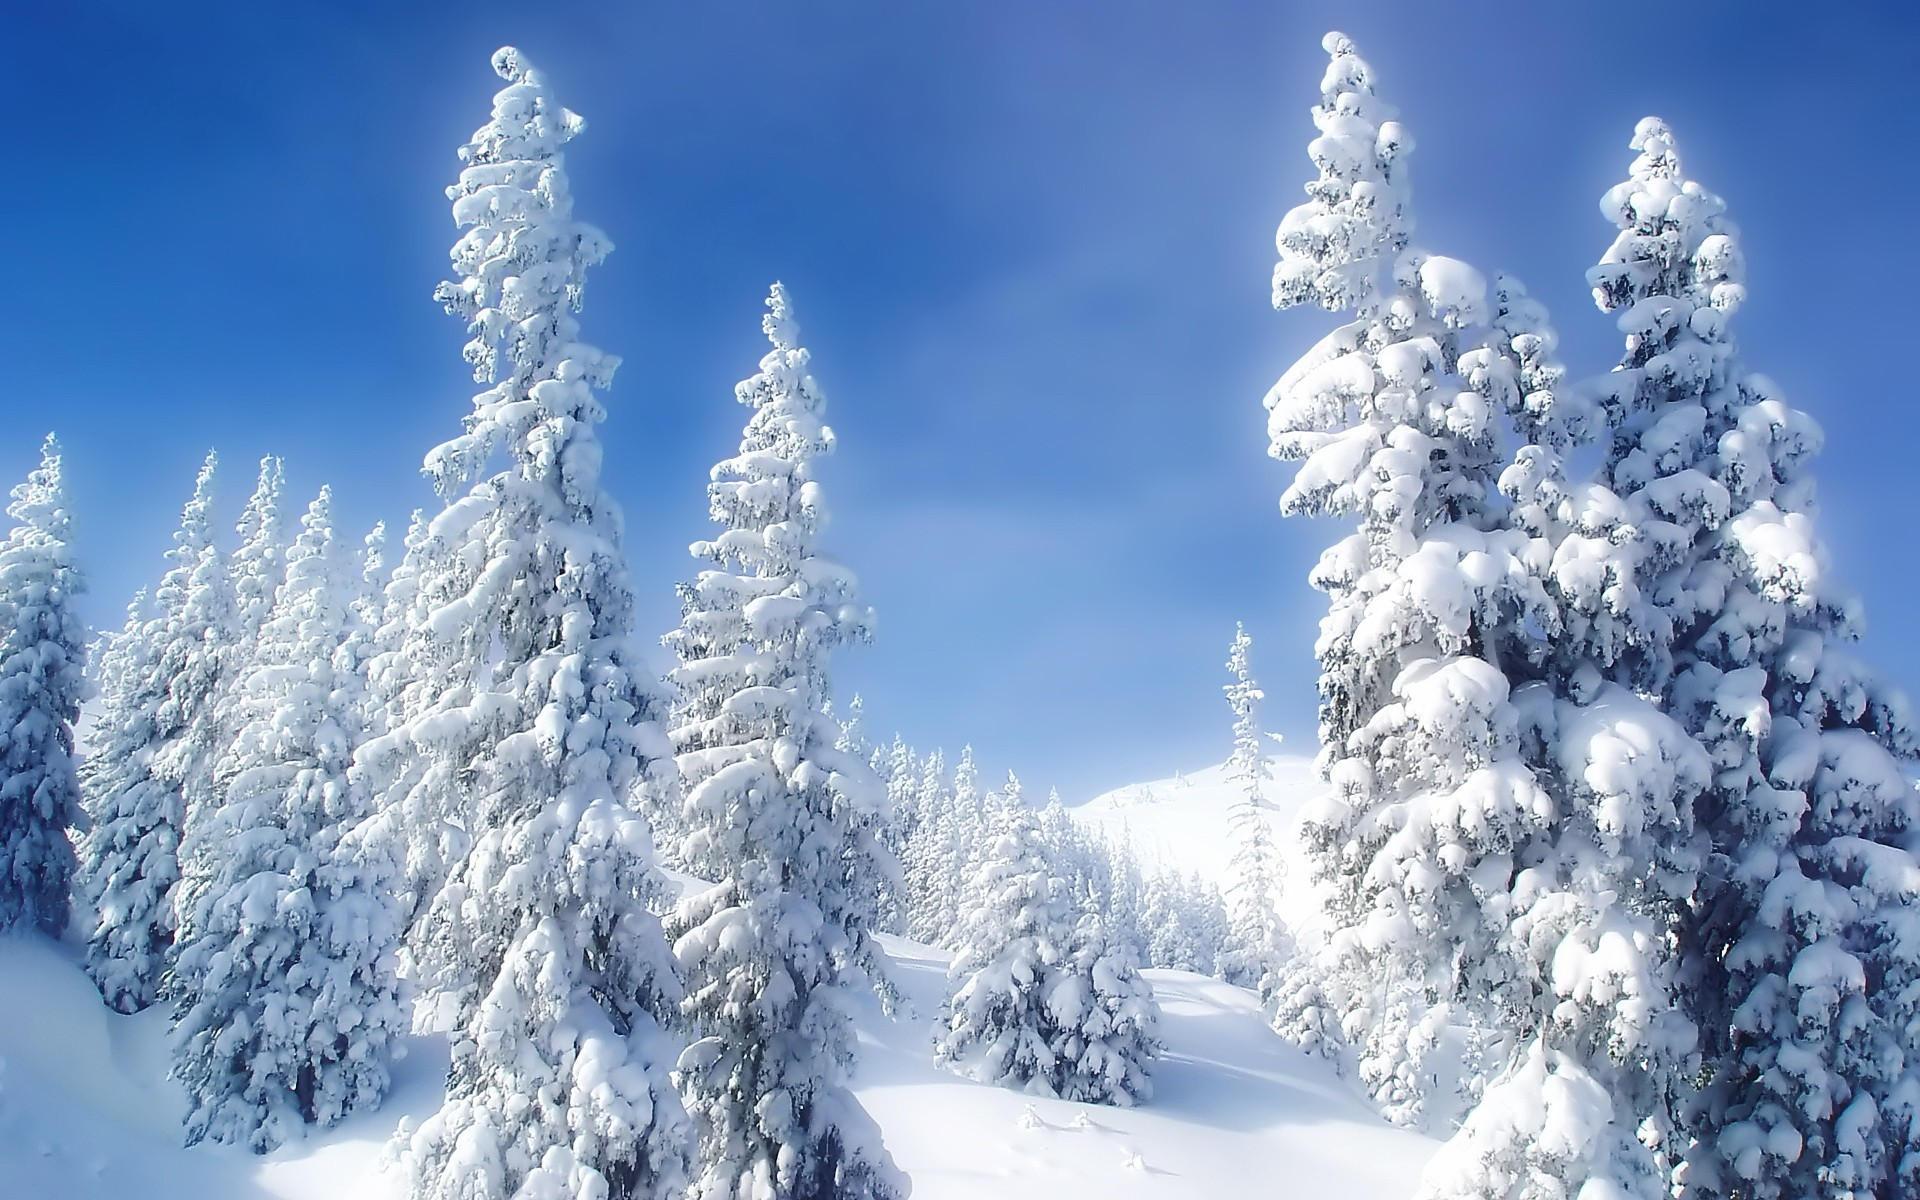 Обои Зима Природа Снег Ветки Шишки Шаблон поздравительной открытки Времена  года зимние ветвь сезон года | Зимние сцены, Зимние картинки, Пейзажи